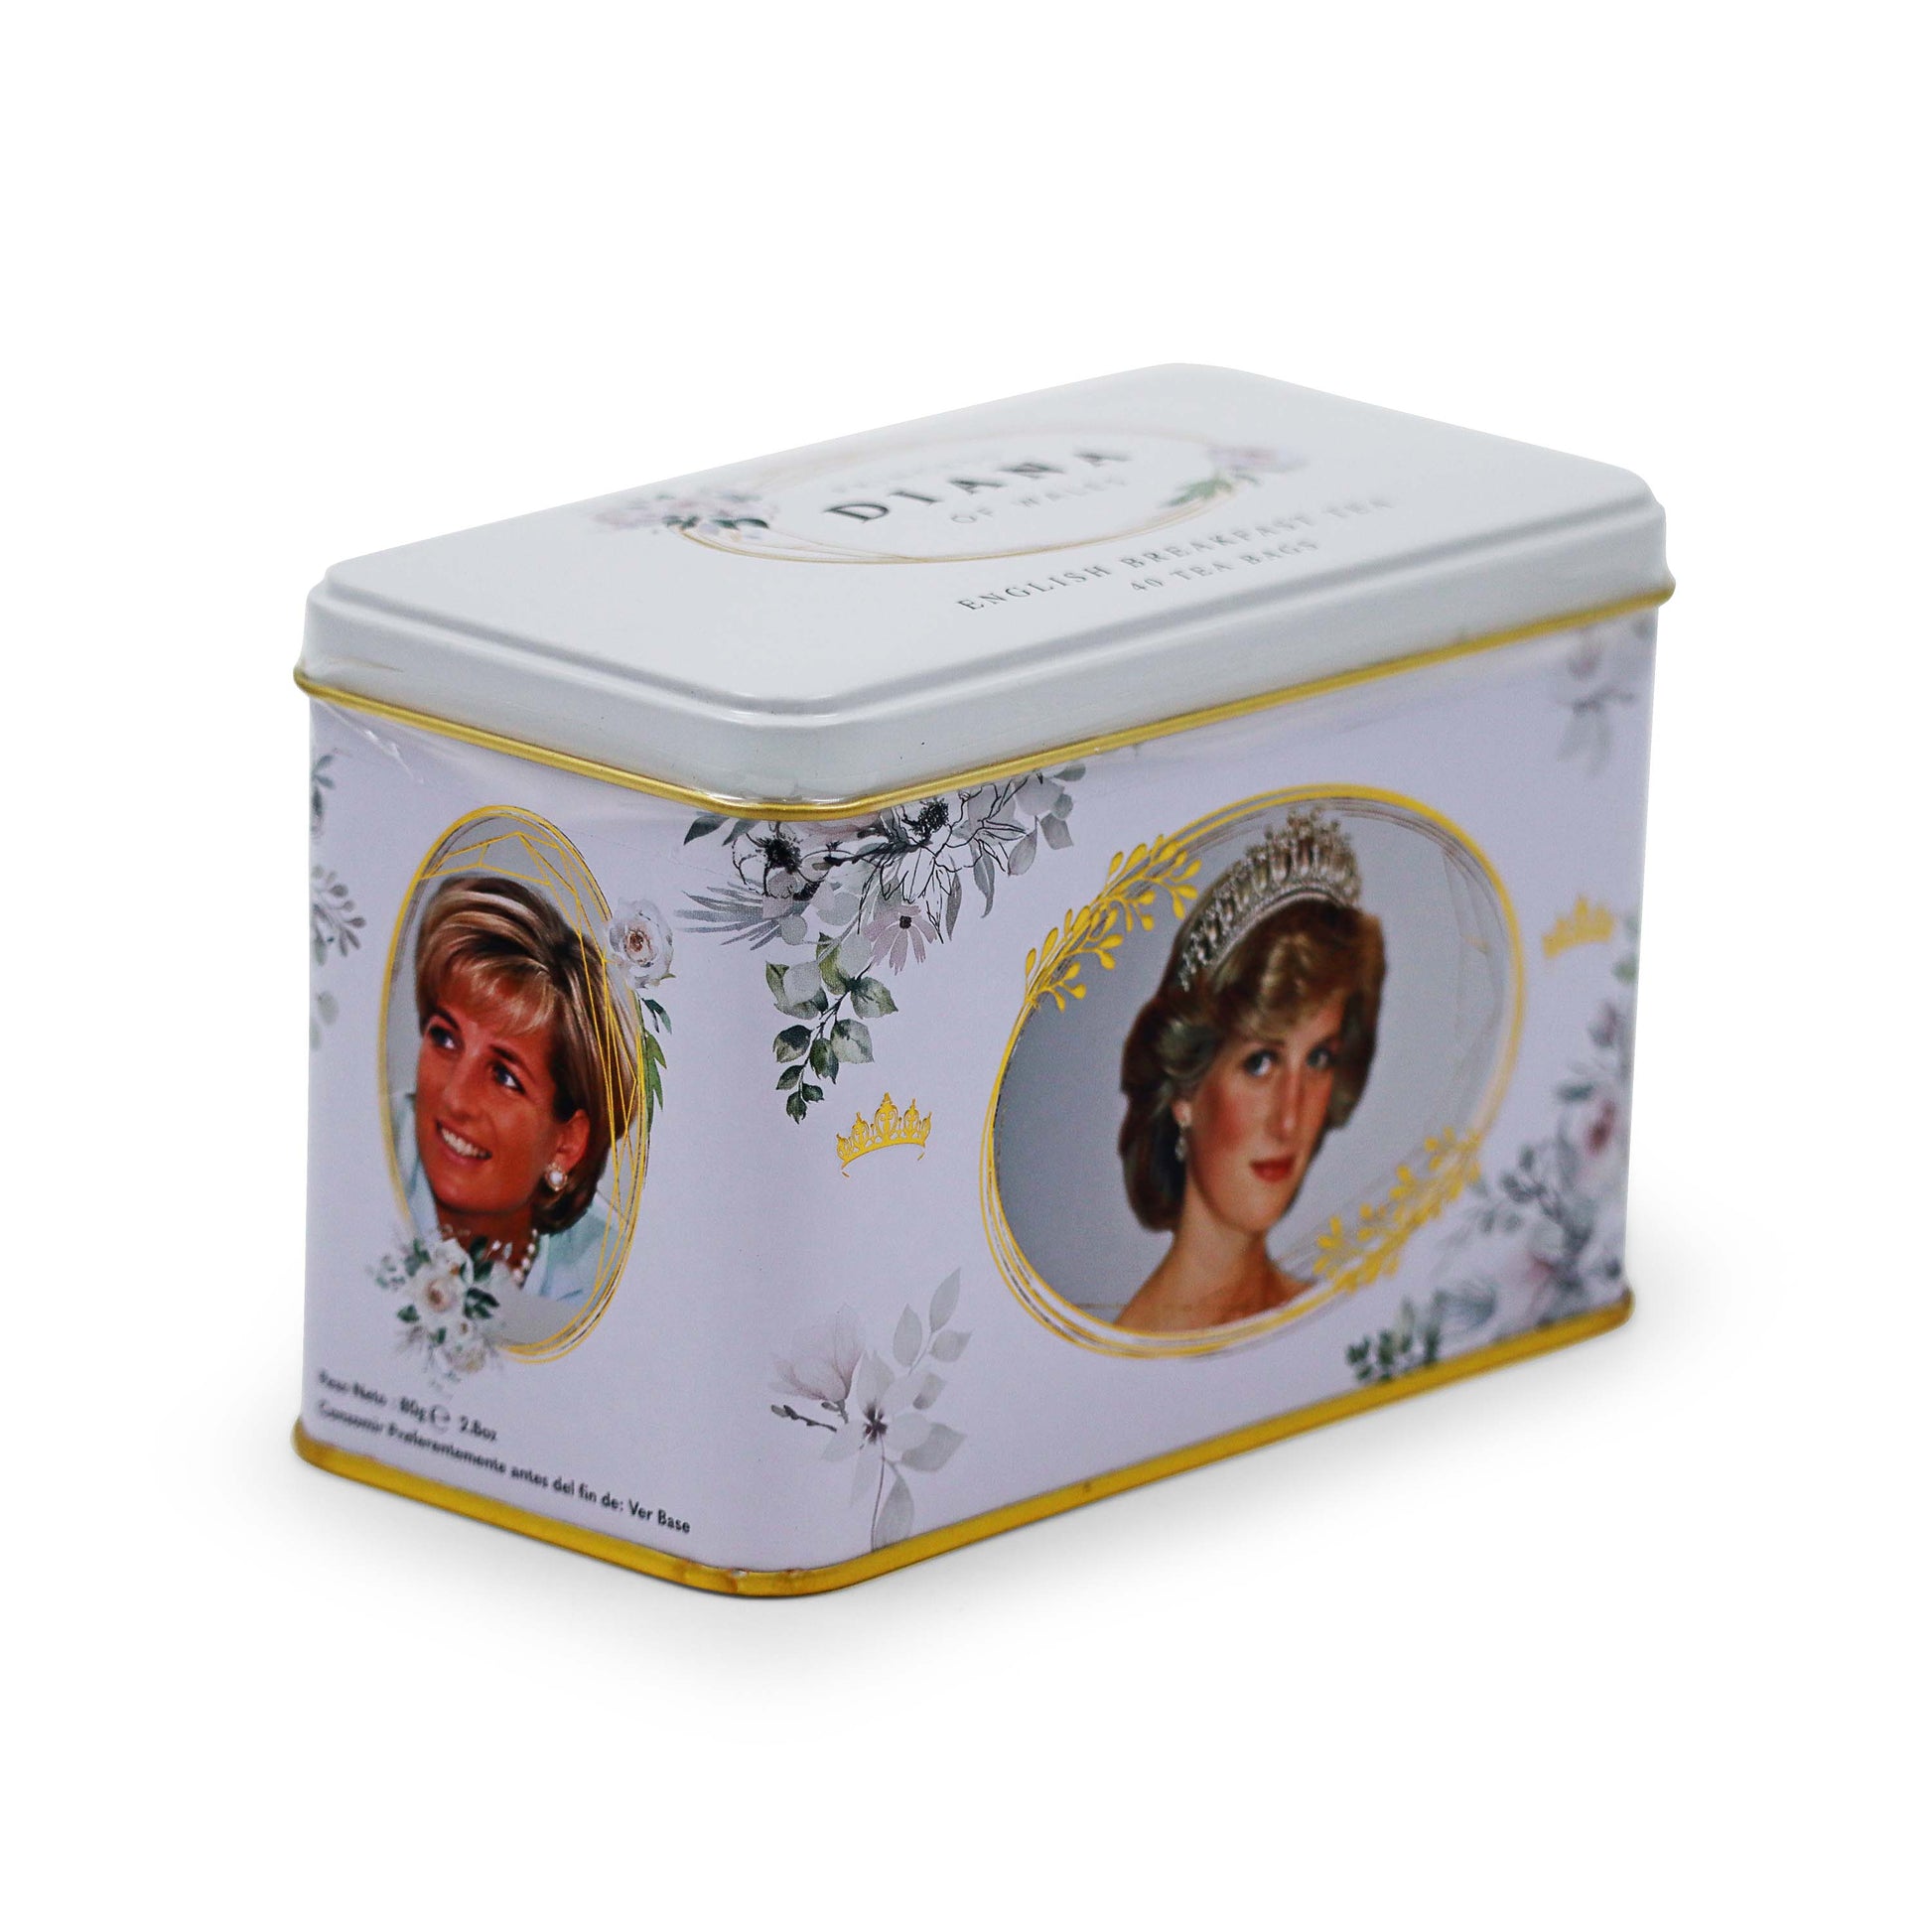 Diana, Princess Of Wales Teabags Tin Tea Caddy